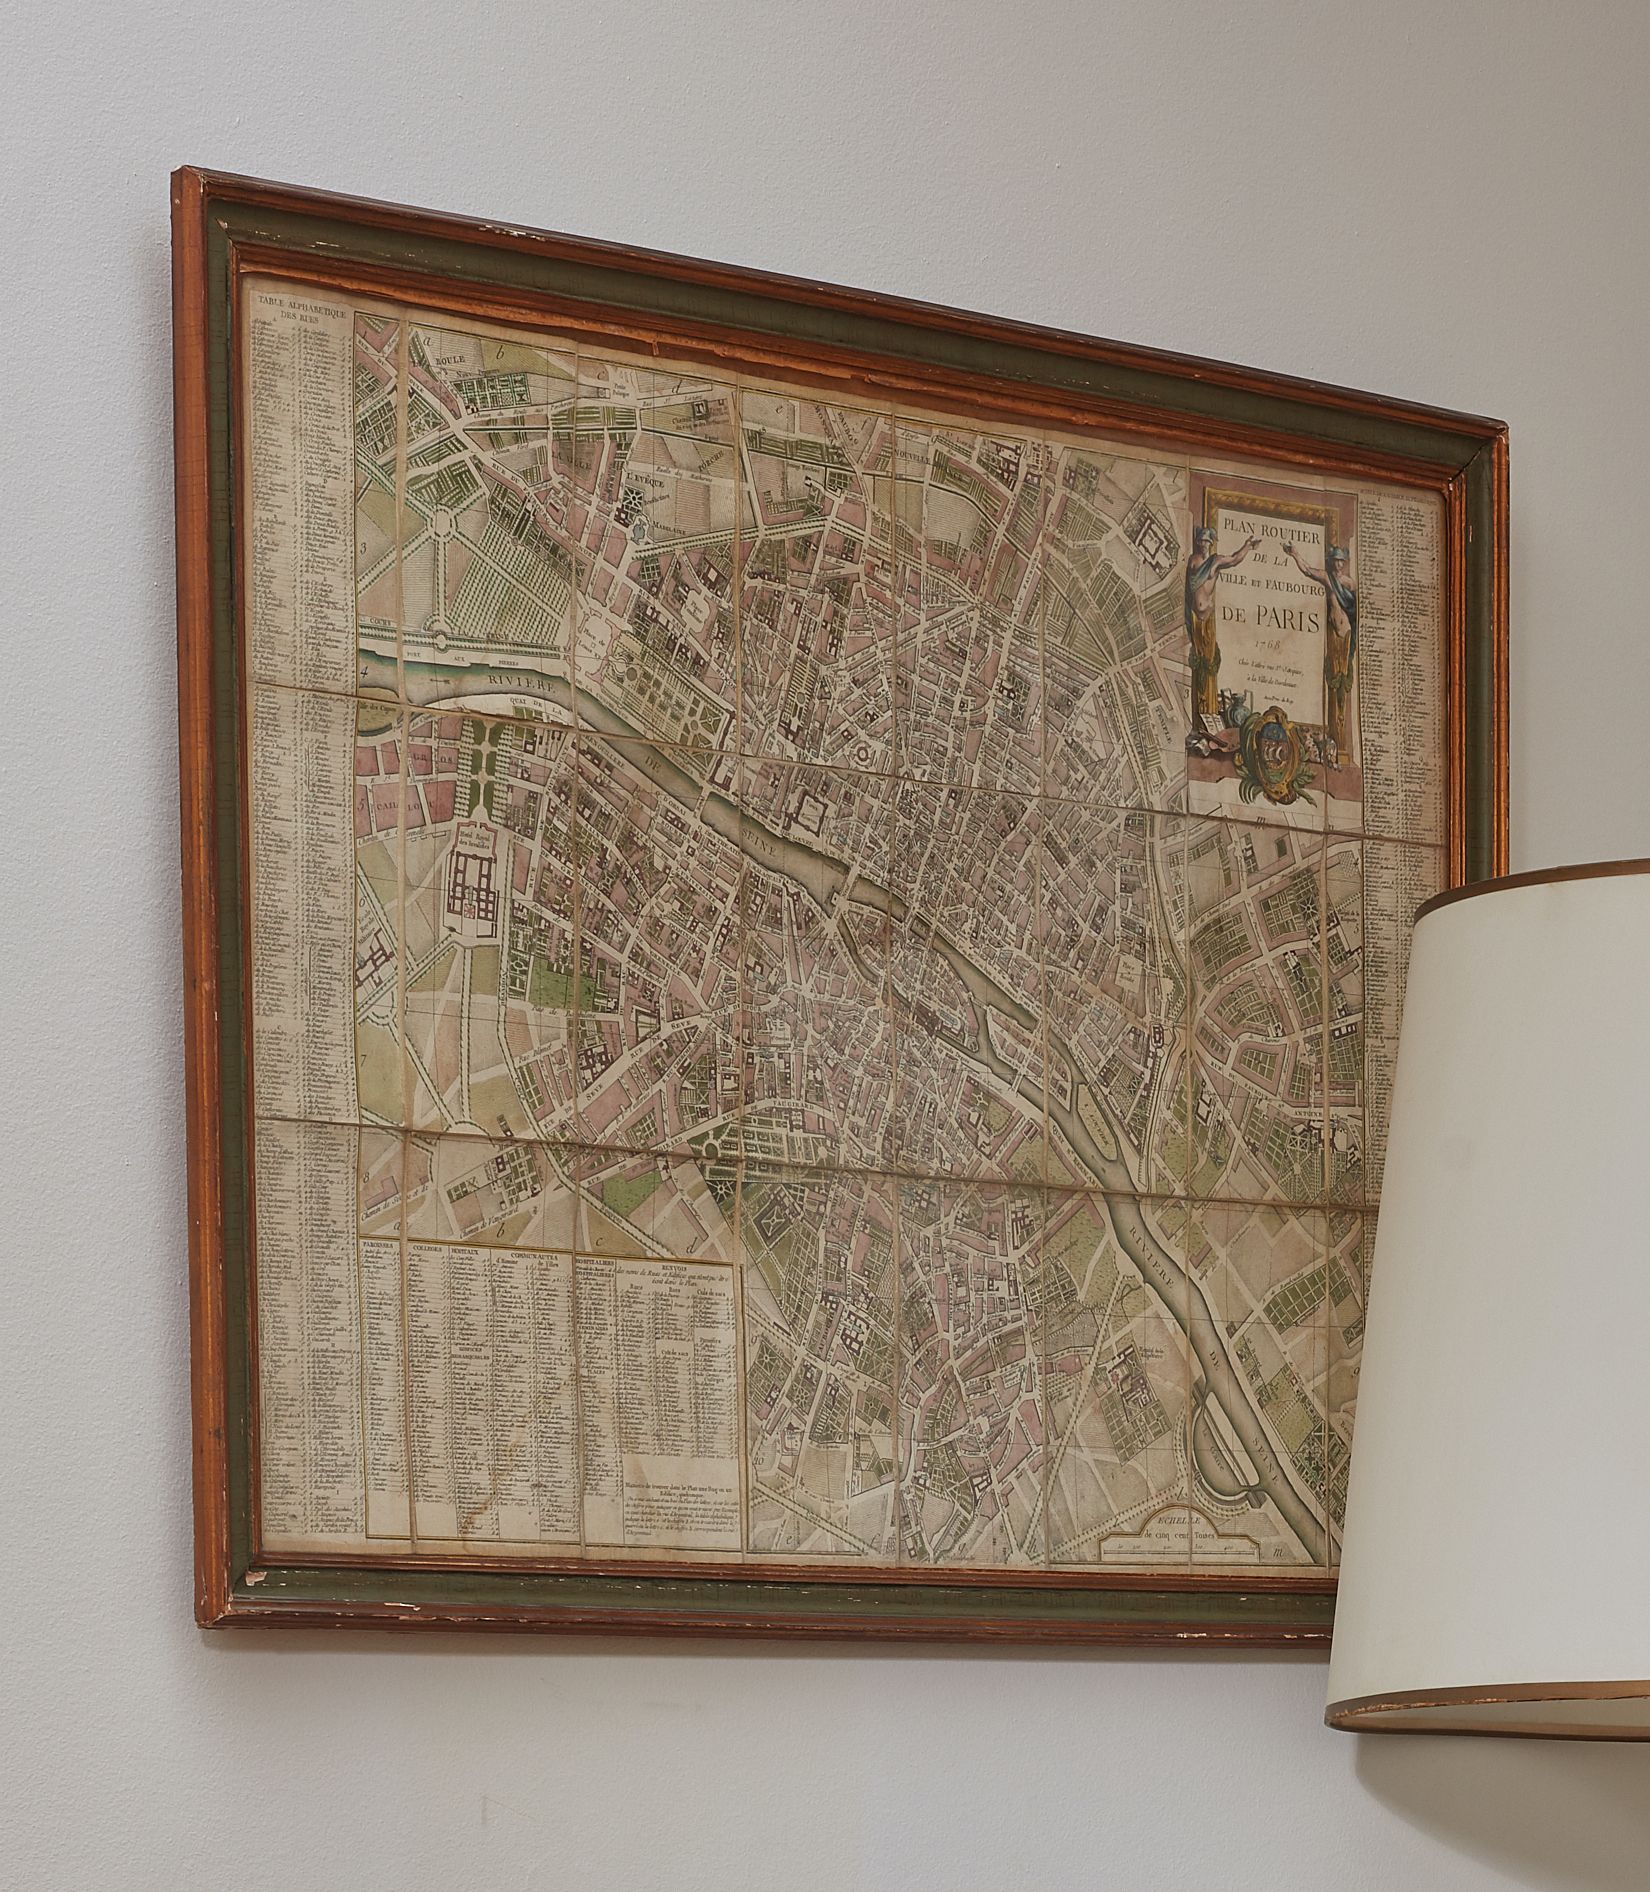 Null Plano de la ciudad y de los suburbios de París 1768
55 x 77 cm